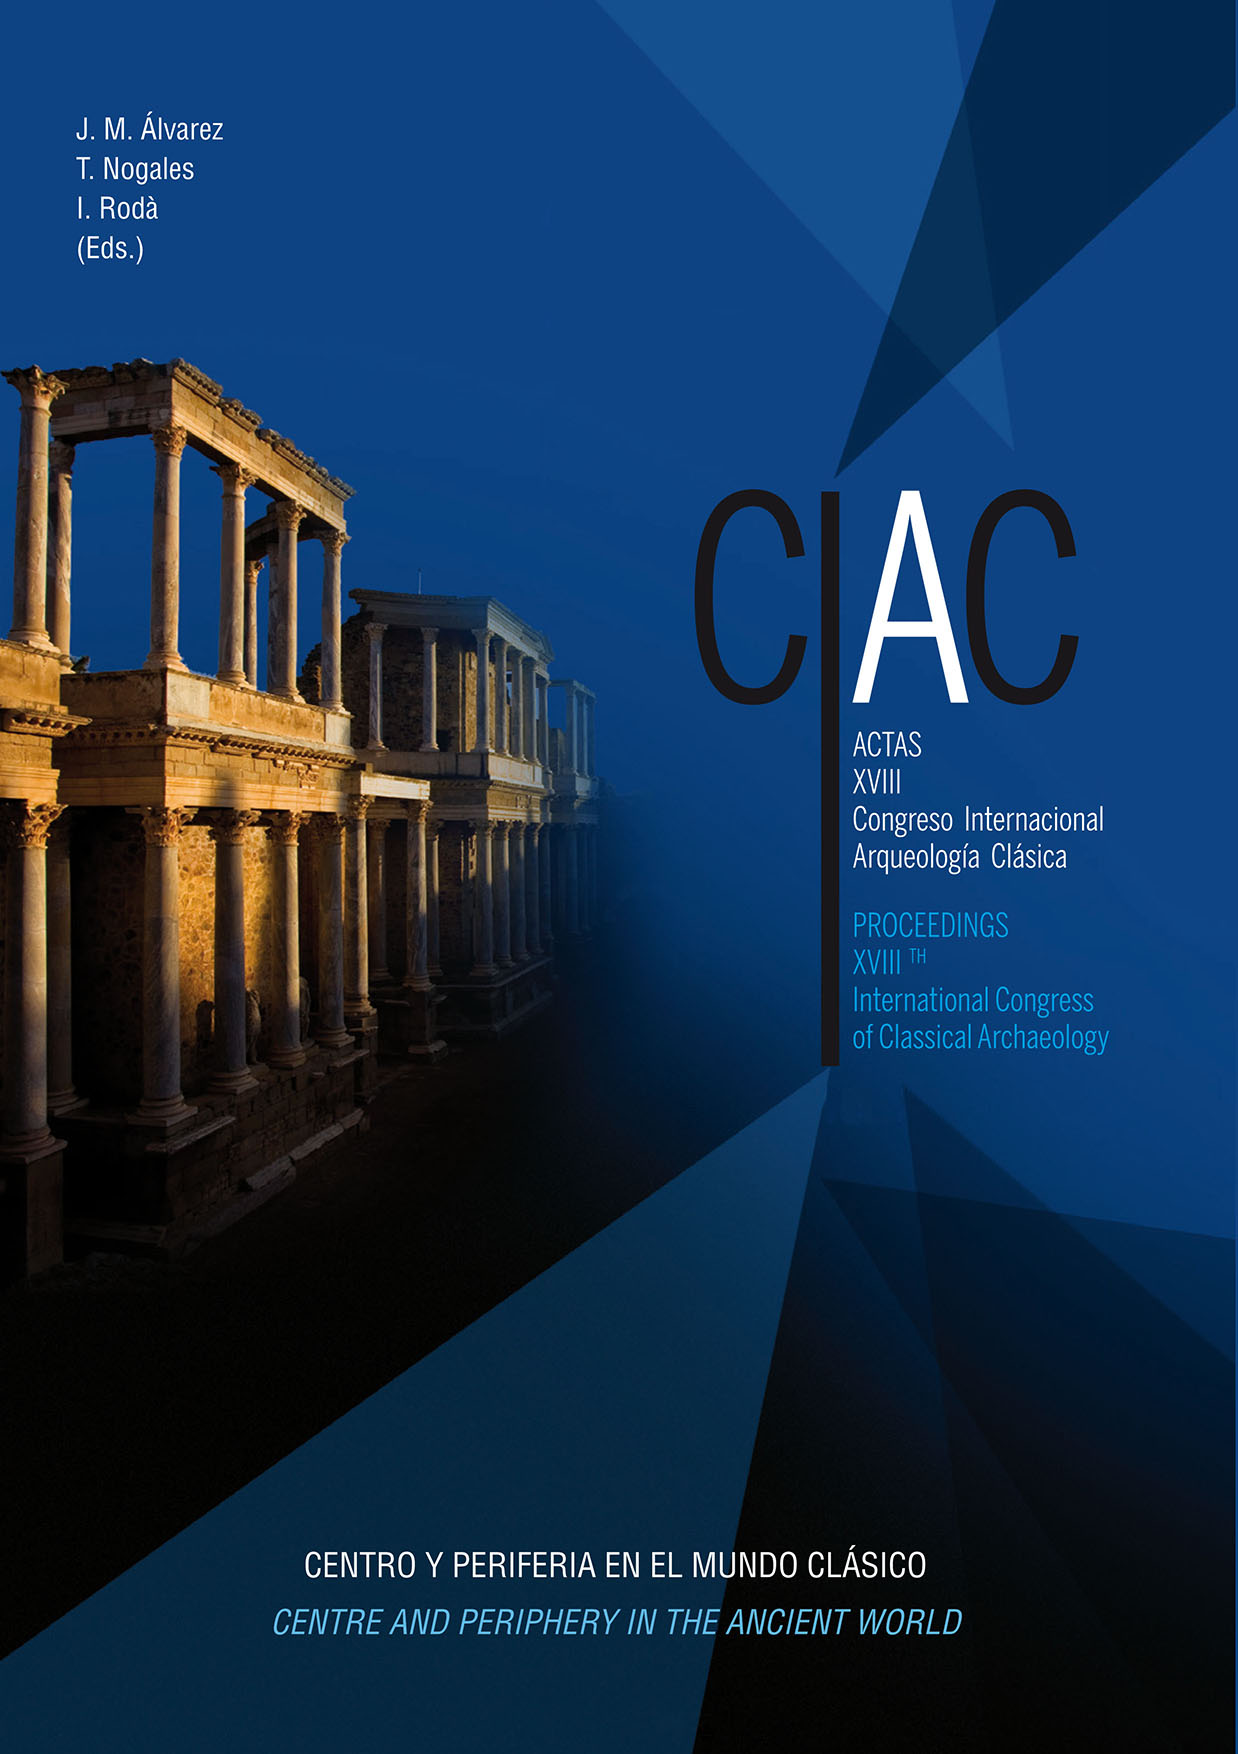 Centro y periferia en el mundo clásico: Actas XVIII Congreso Internacional  Arqueología Clásica : CIAC,[Mérida, 2013] - Dialnet